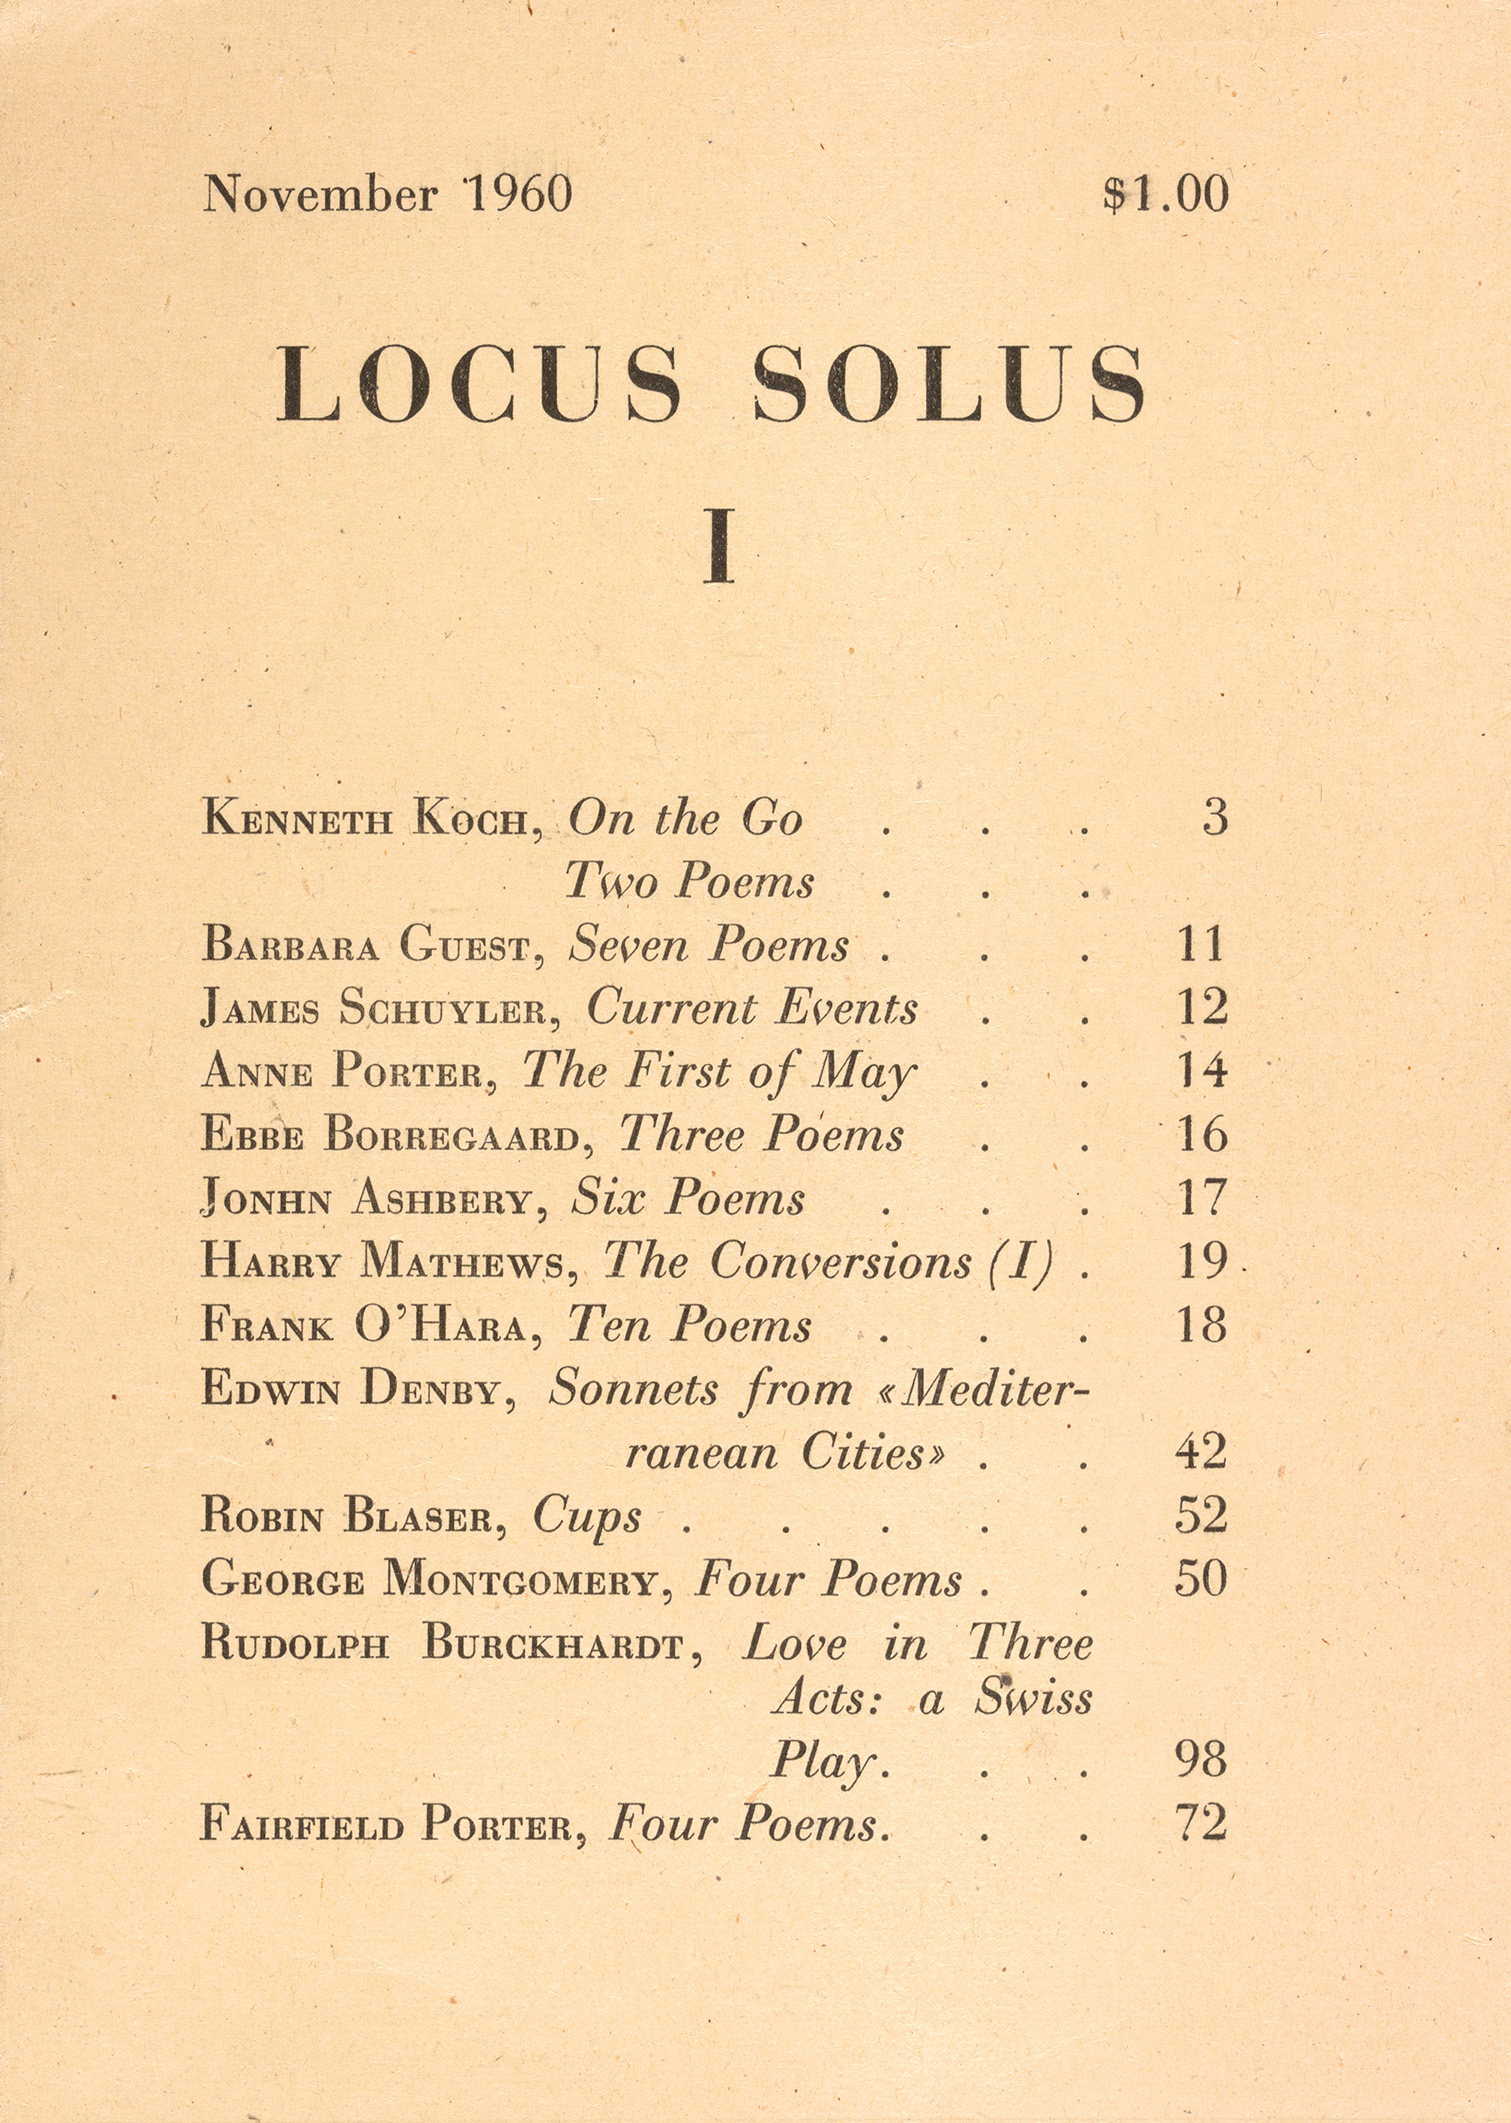 Cover proof for Locus Solus I.